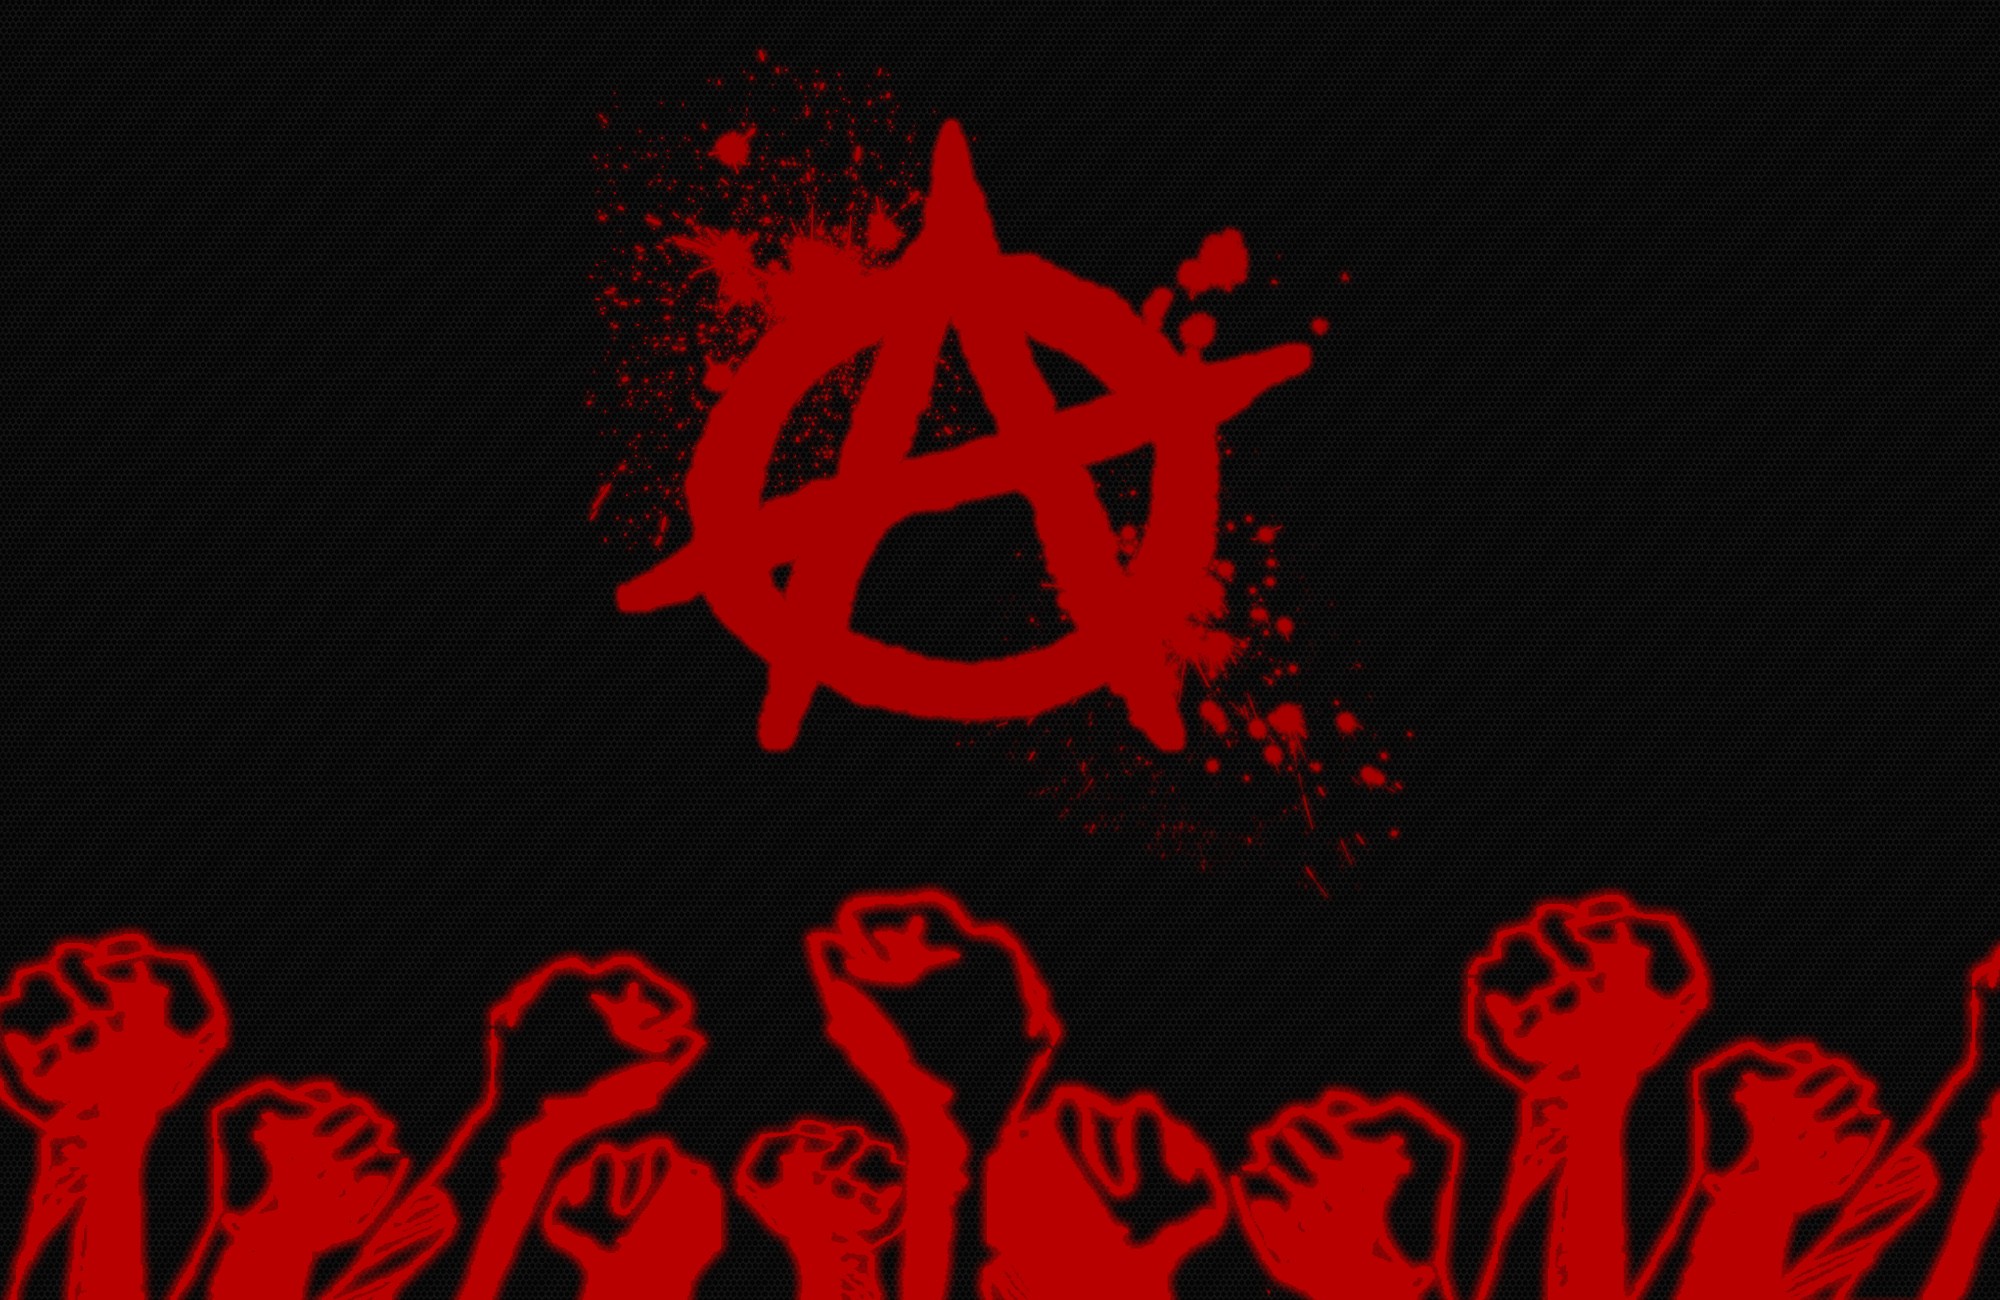 черный цвет, красный цвет, кулаки, анархия - обои на рабочий стол